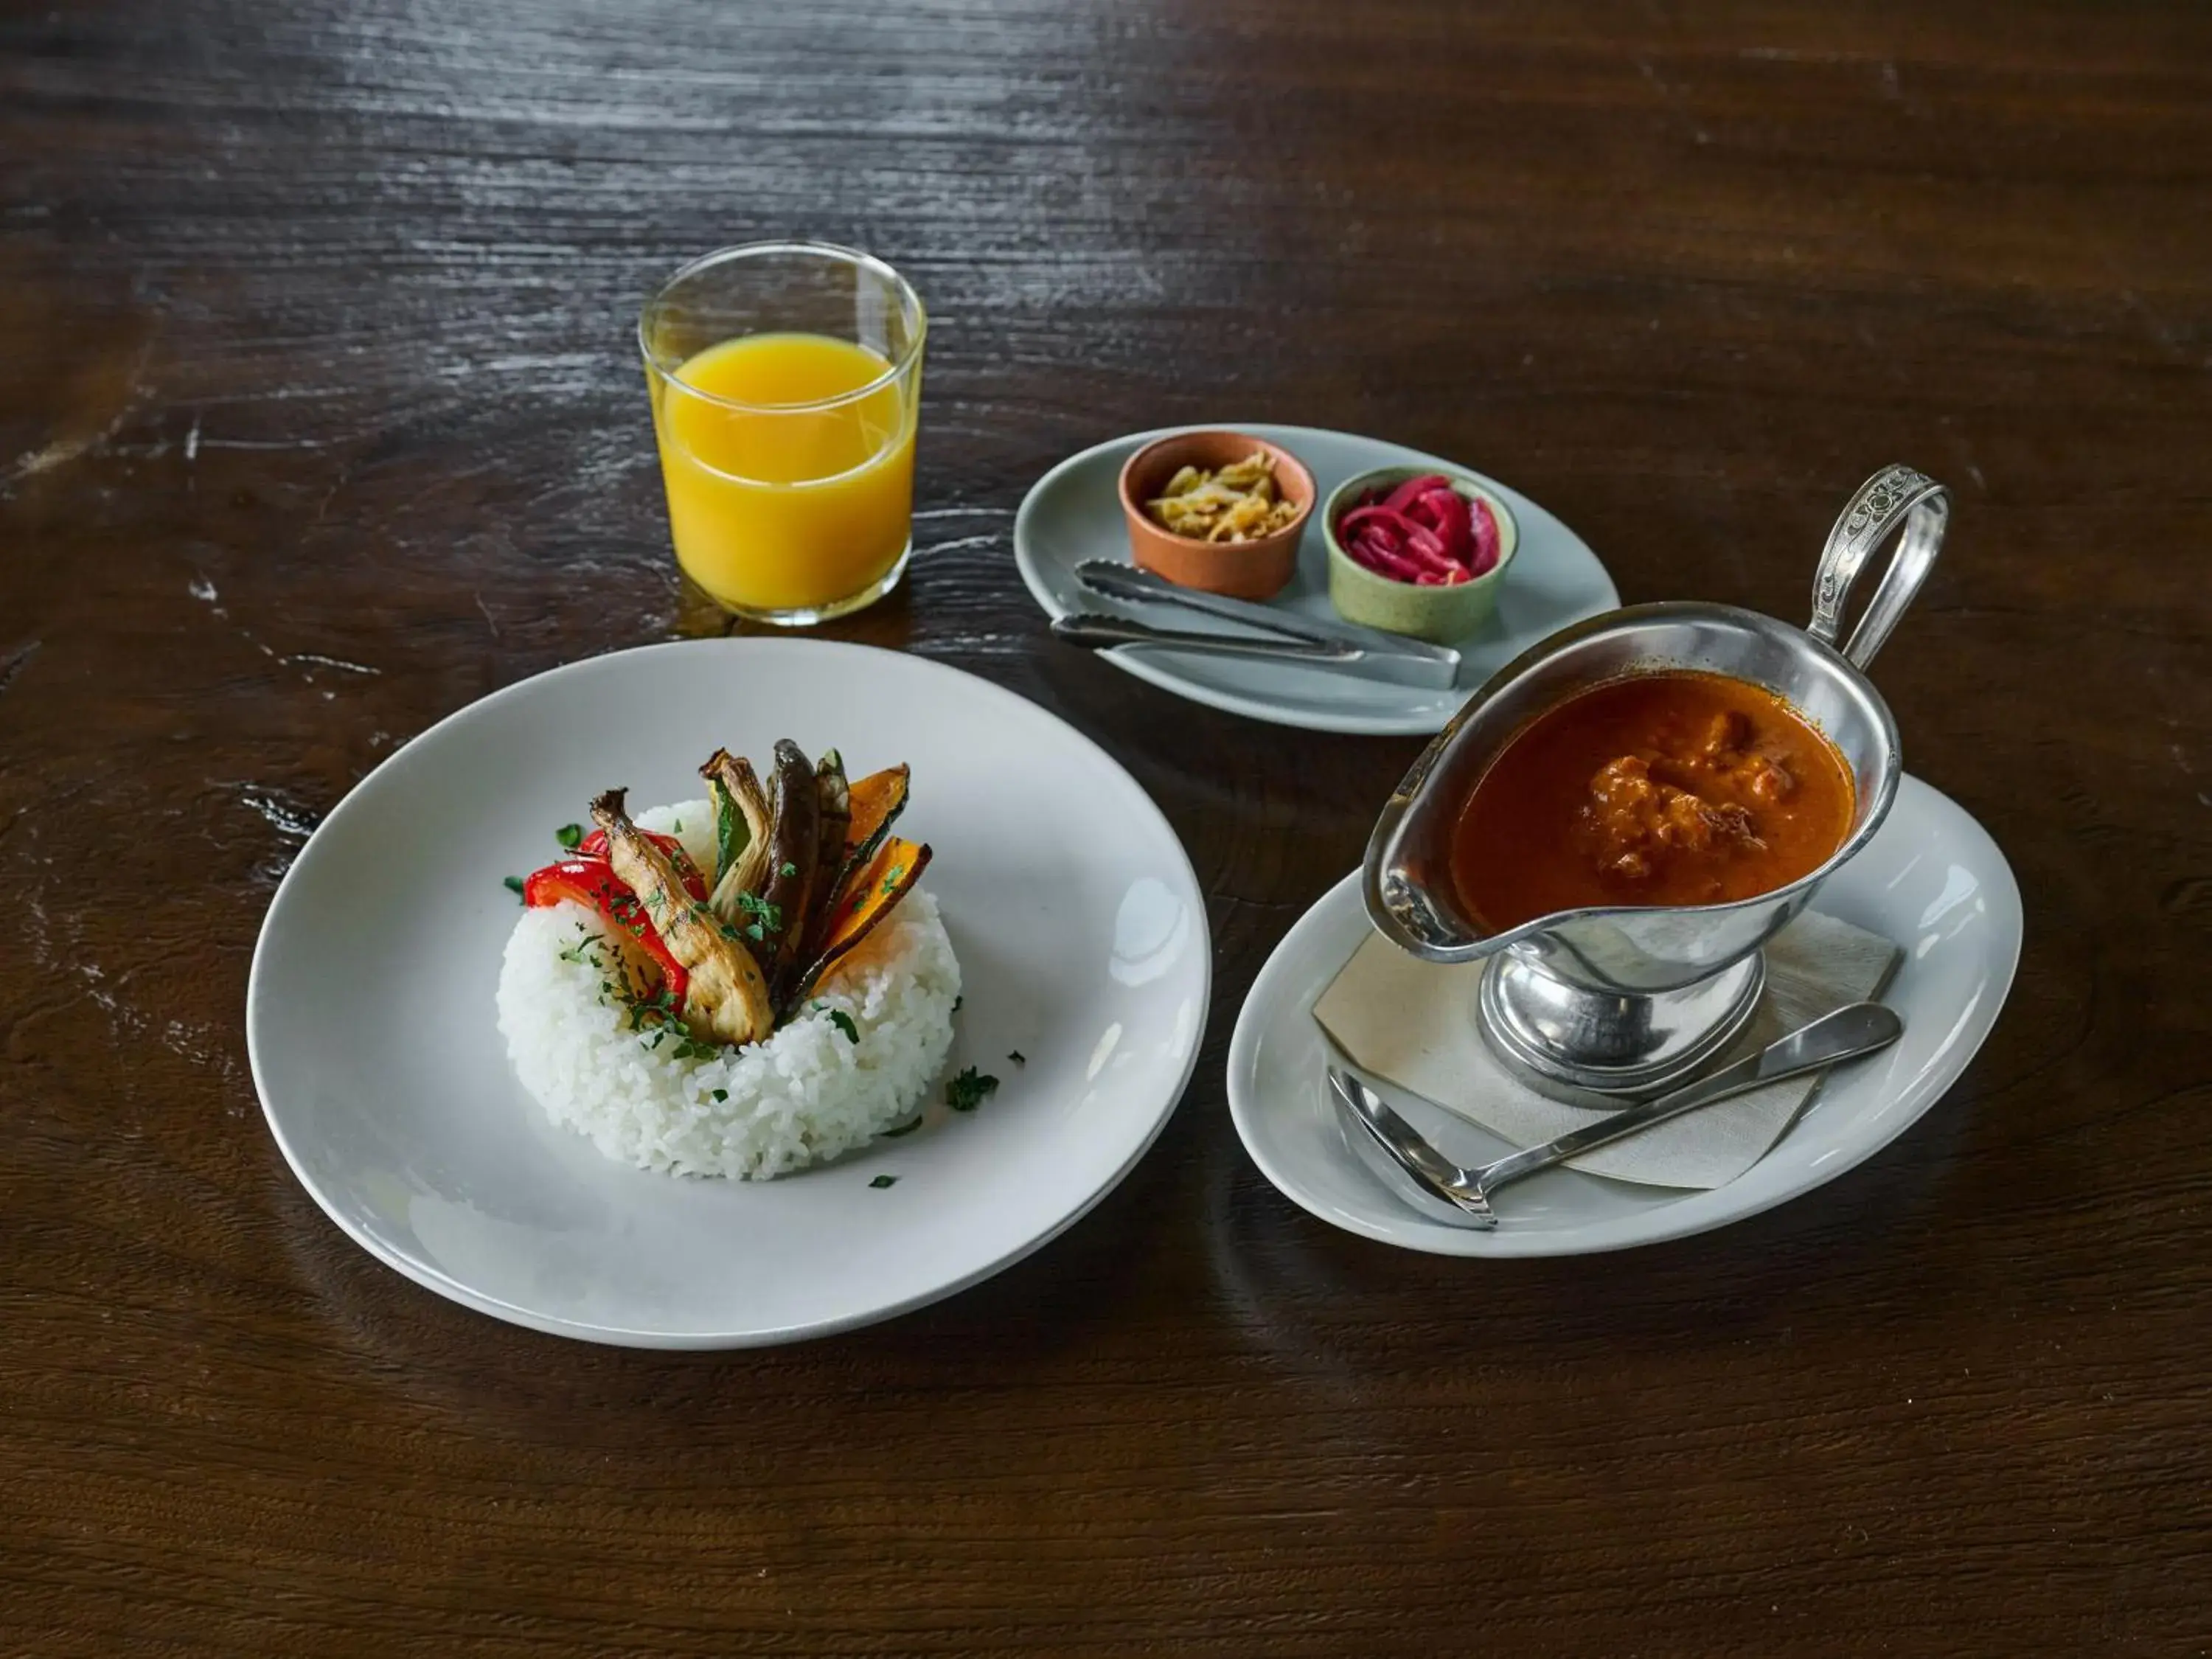 Food in sequence MIYASHITA PARK / SHIBUYA